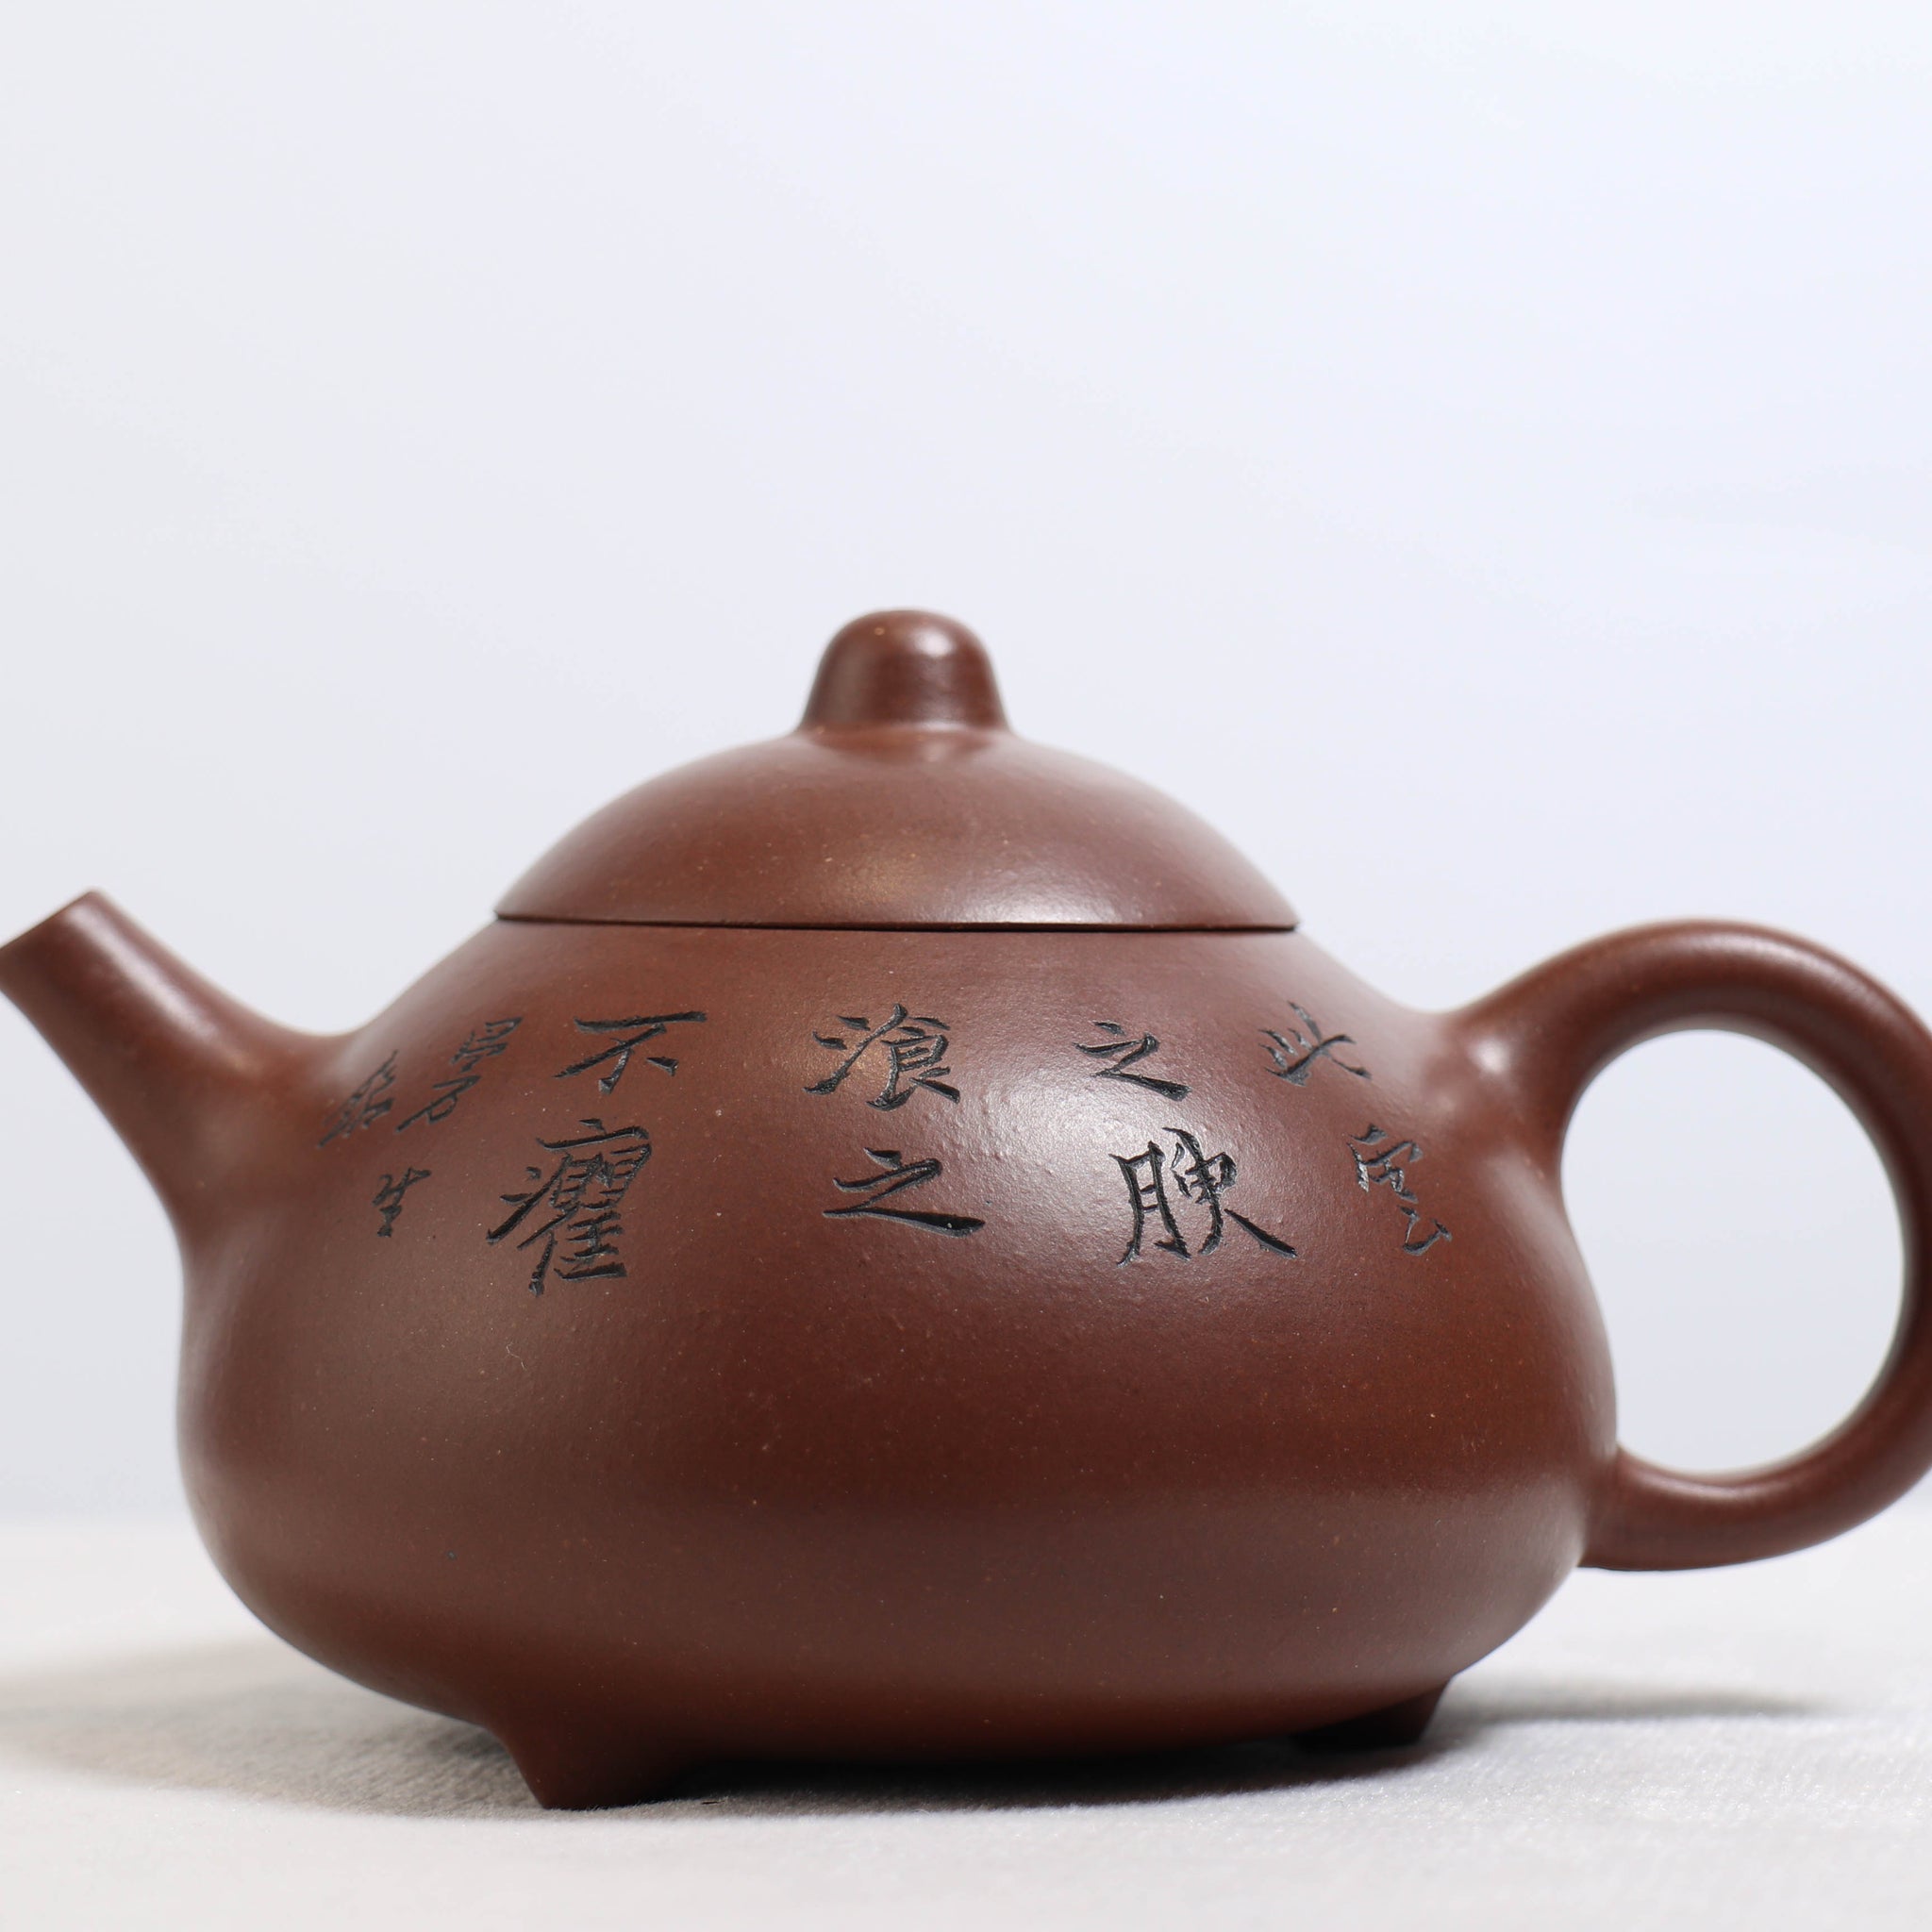 【曼生十八式】底槽青書法紫砂茶壺